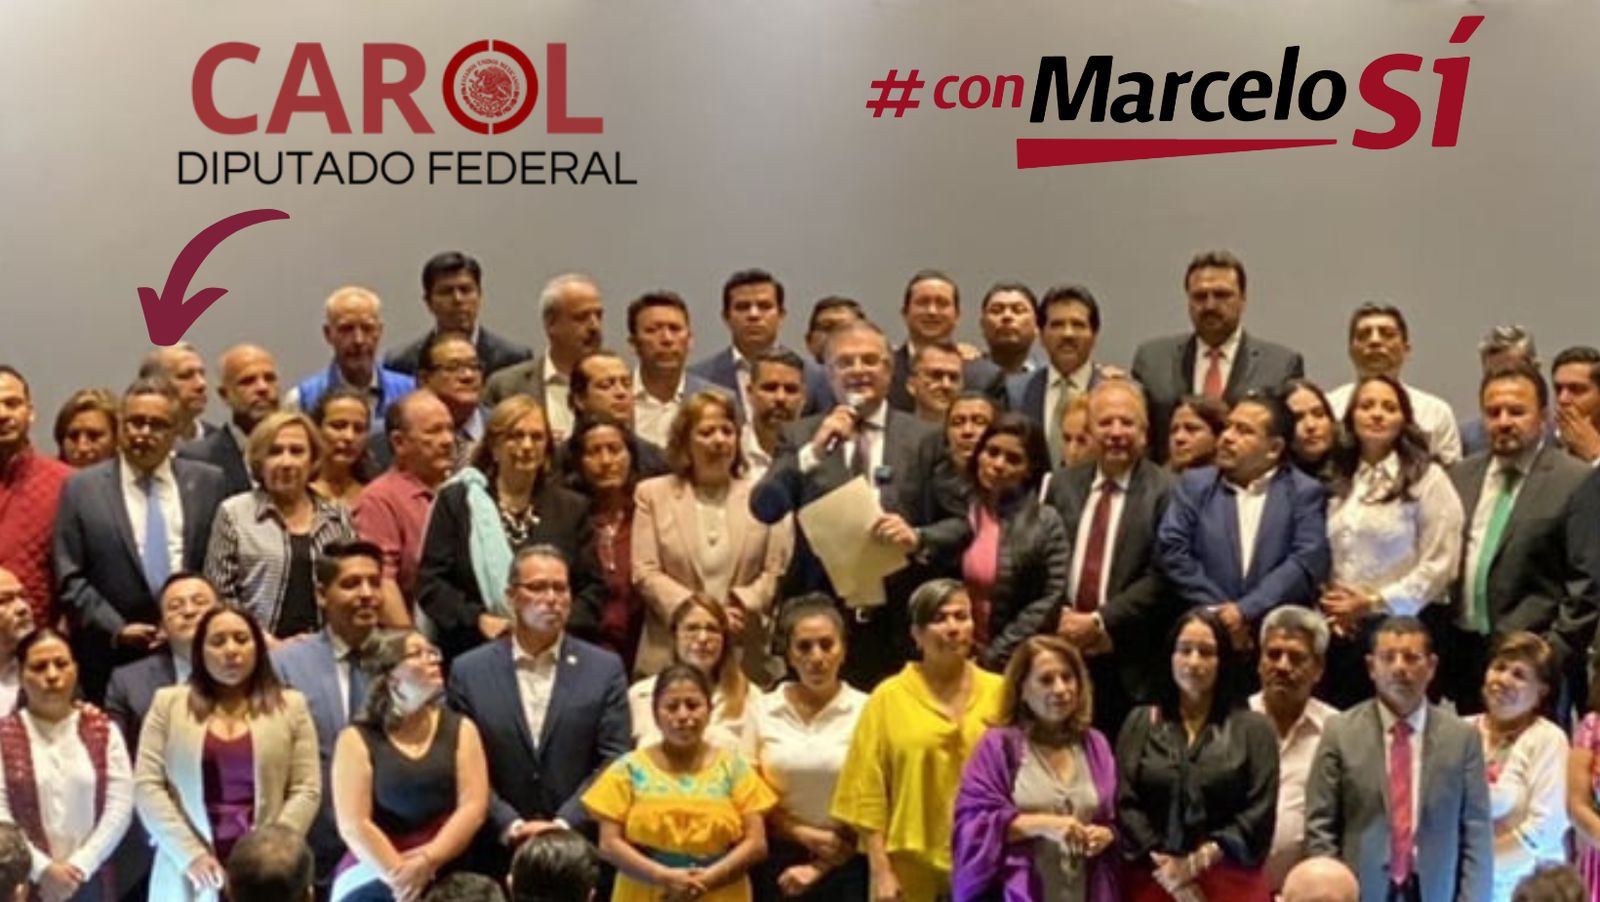 El anuncio de Marcelo es un buen mensaje para la democracia en el país y para Morena: Carol Altamirano